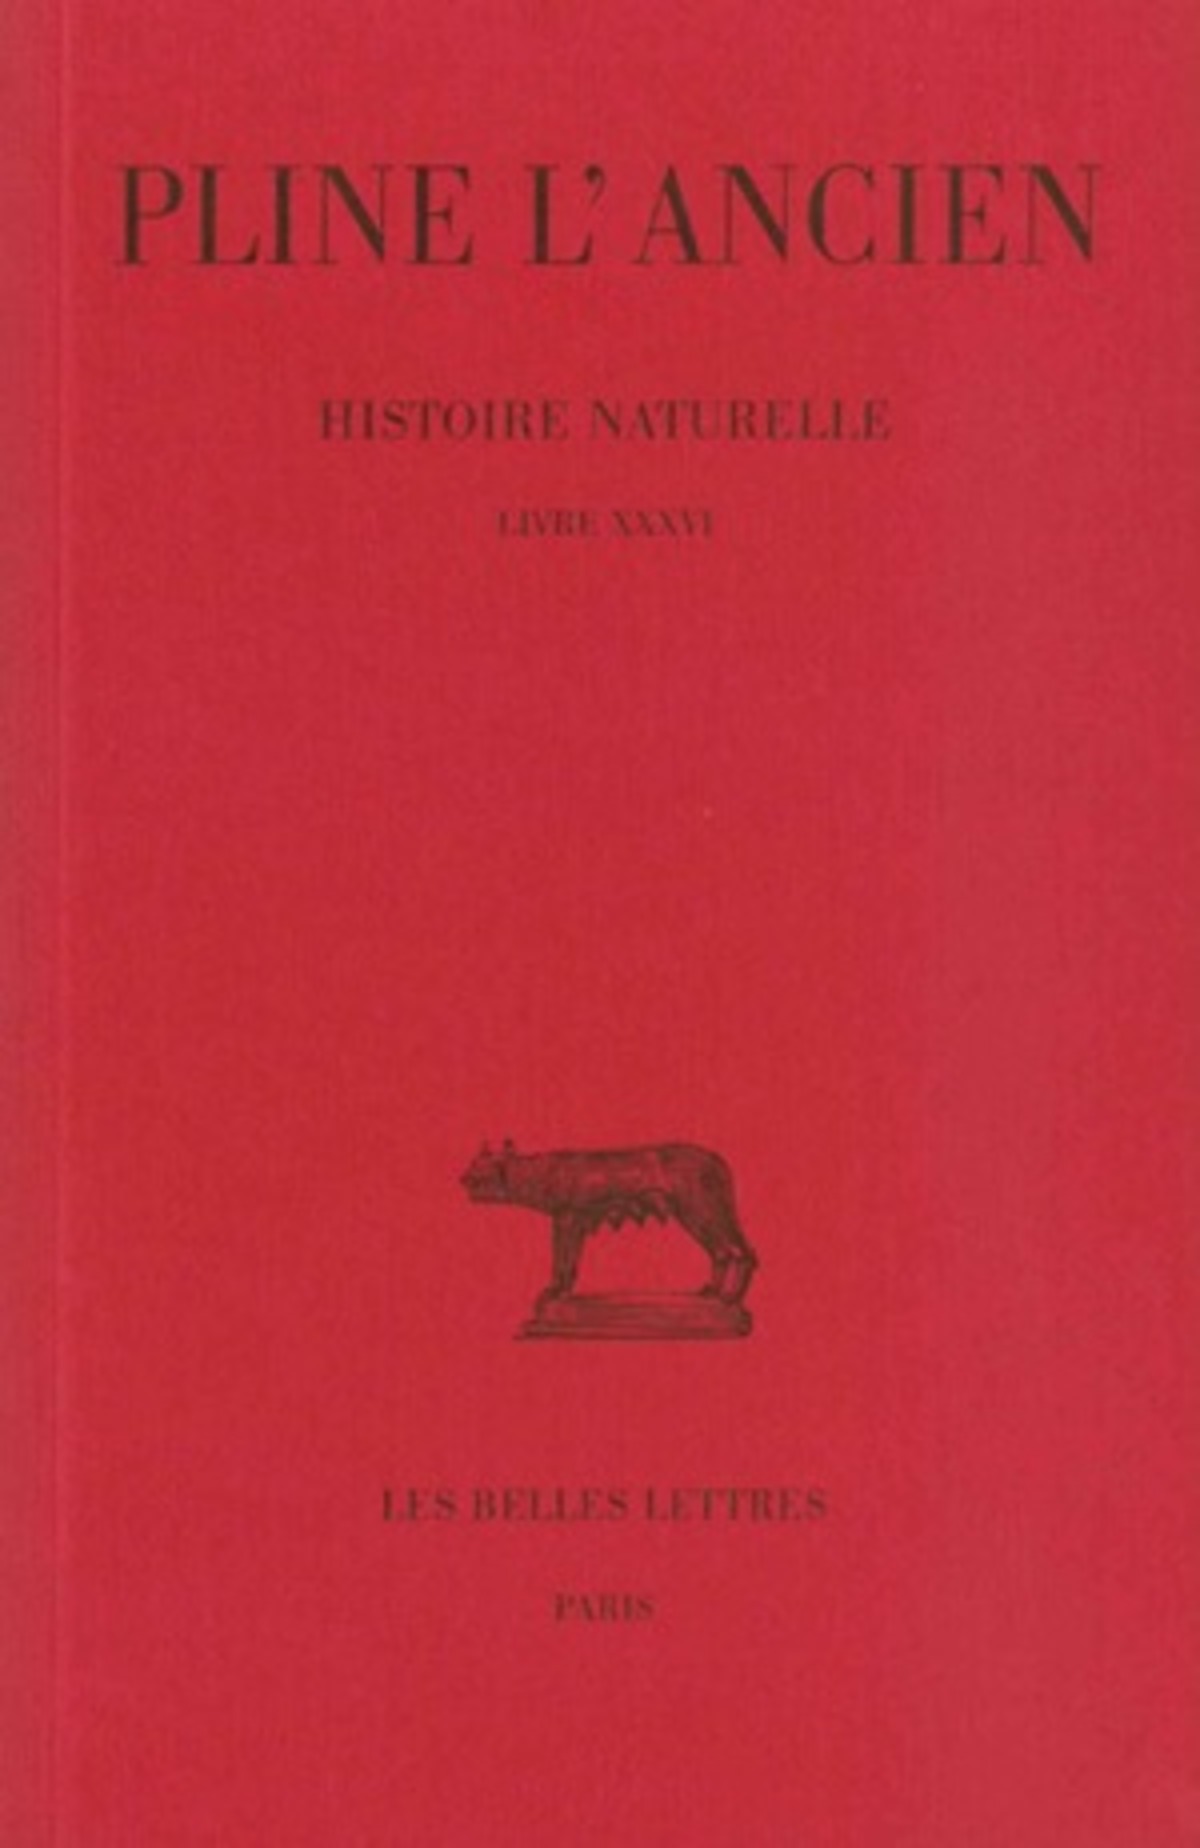 Histoire naturelle. Livre XXXVI